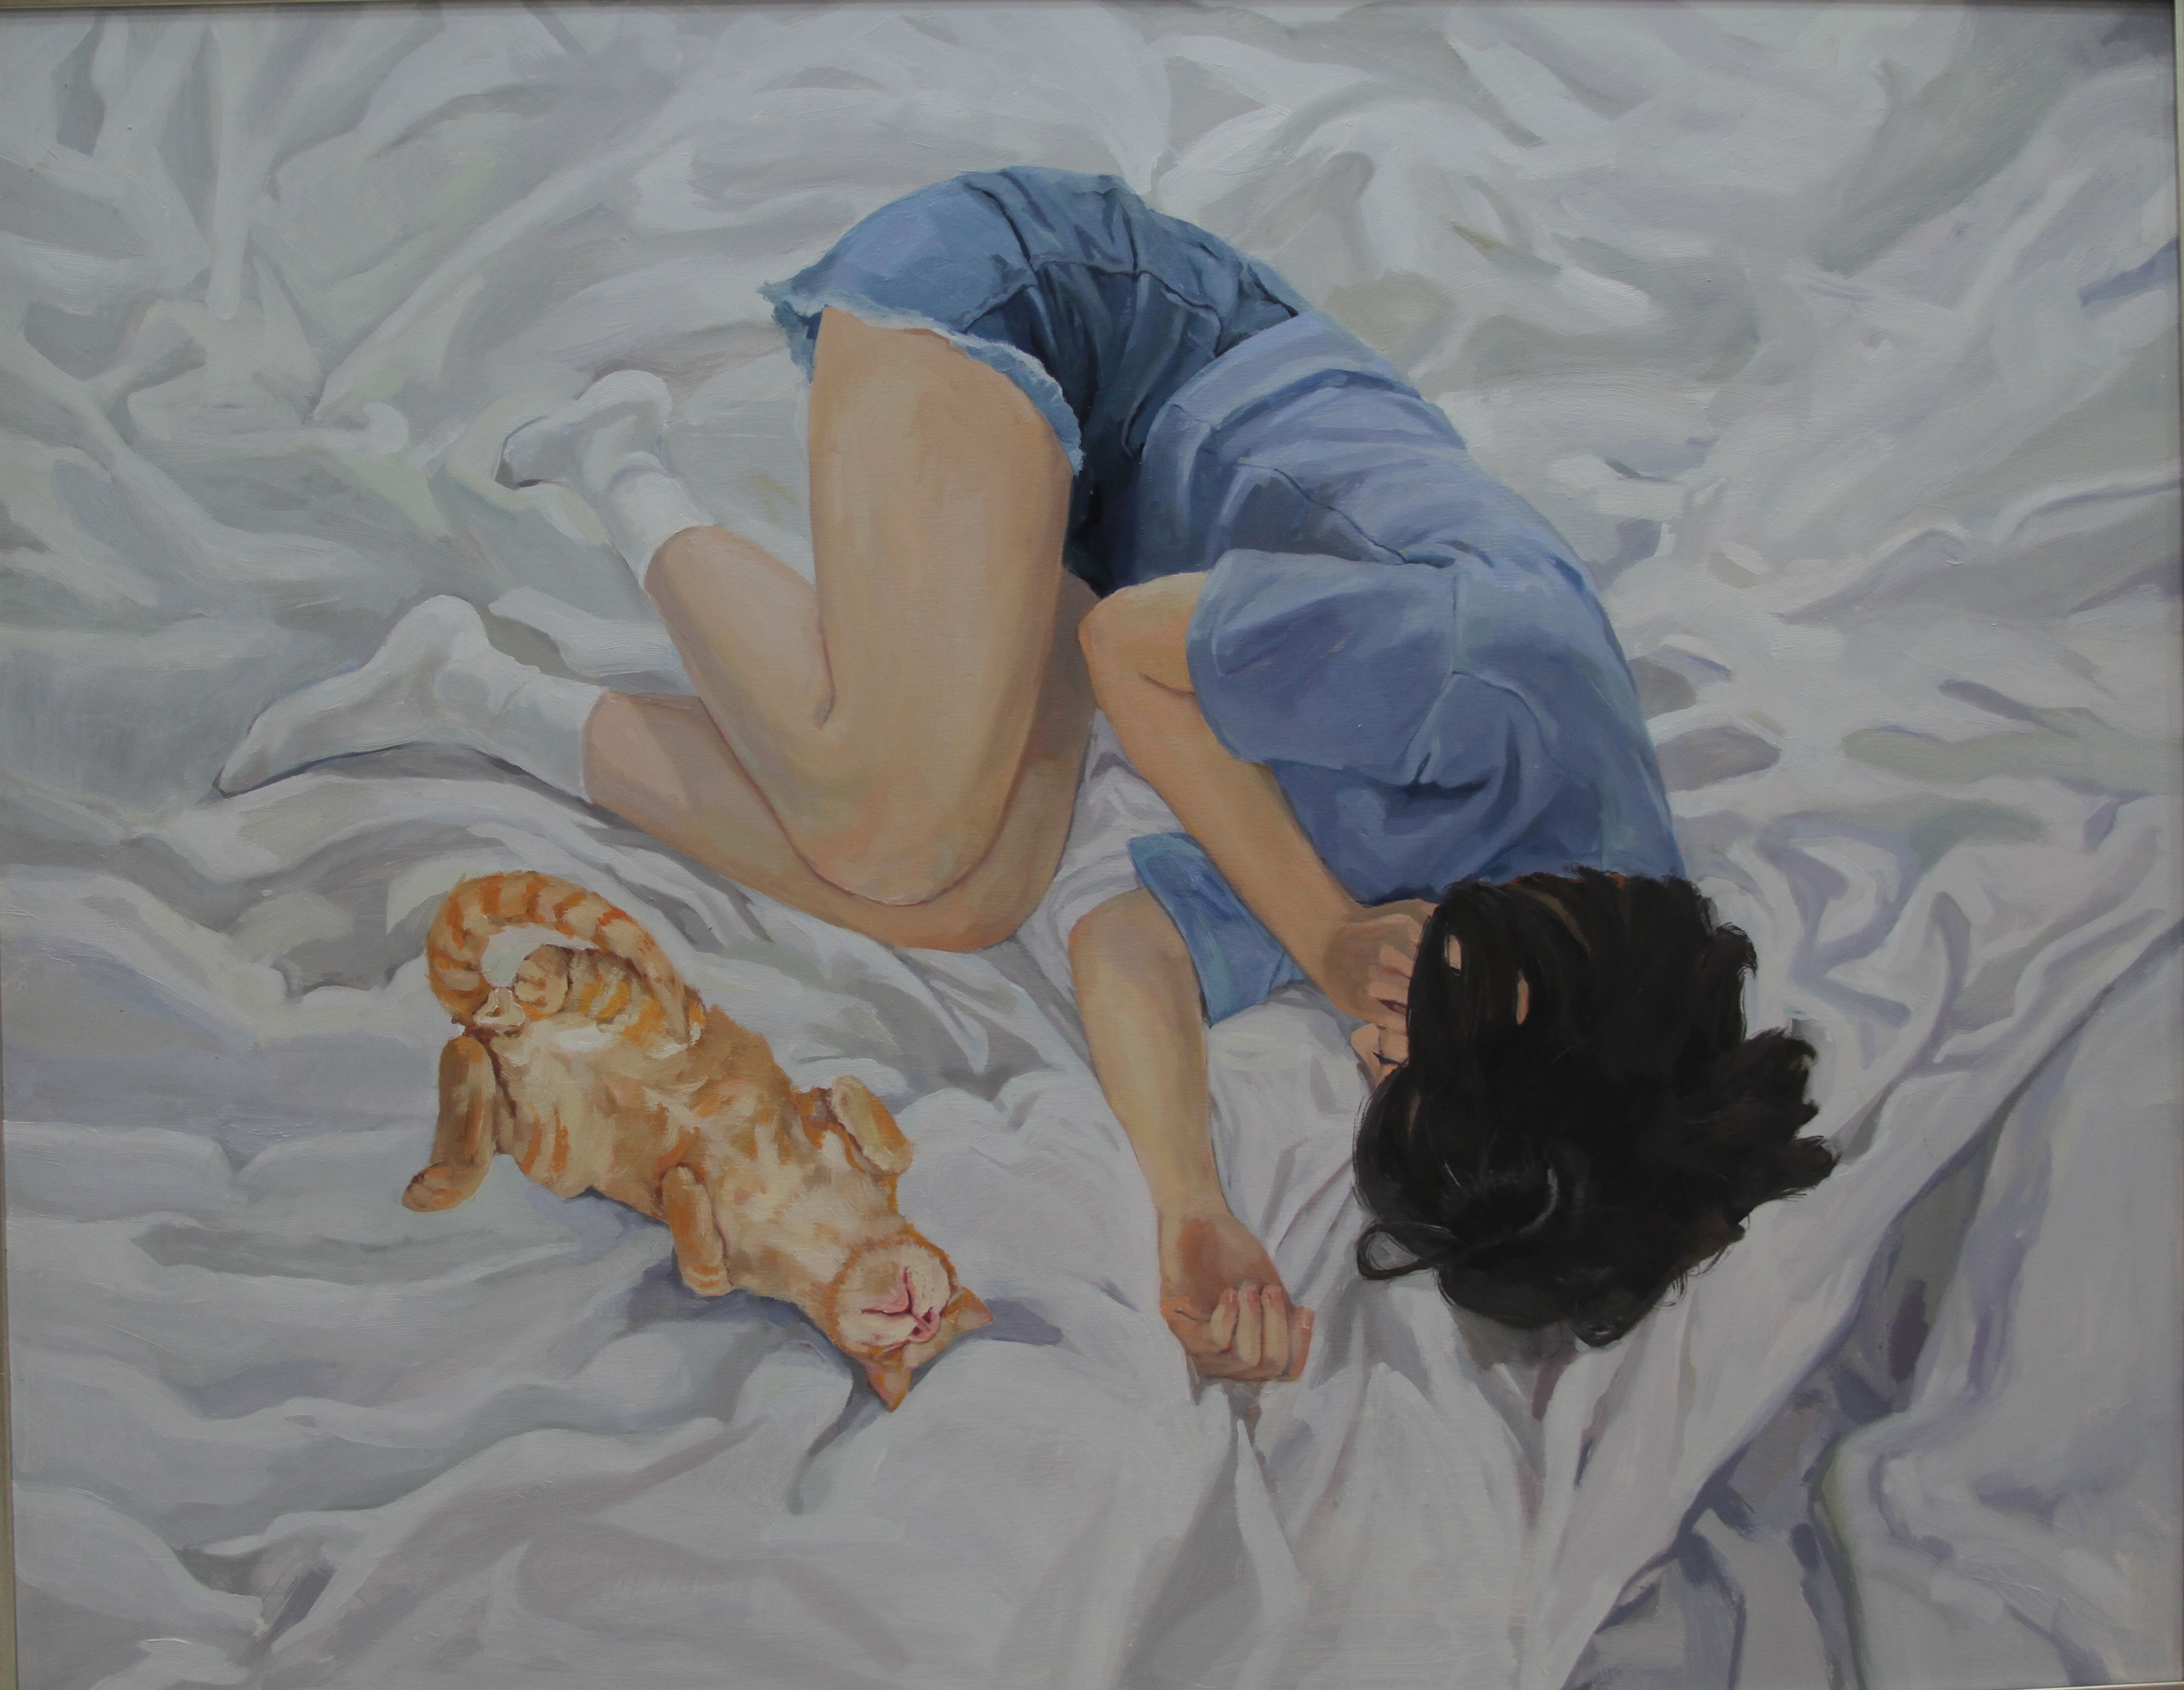 原创作品:《猫与少女》任少蕊 油画系 天津美术学院